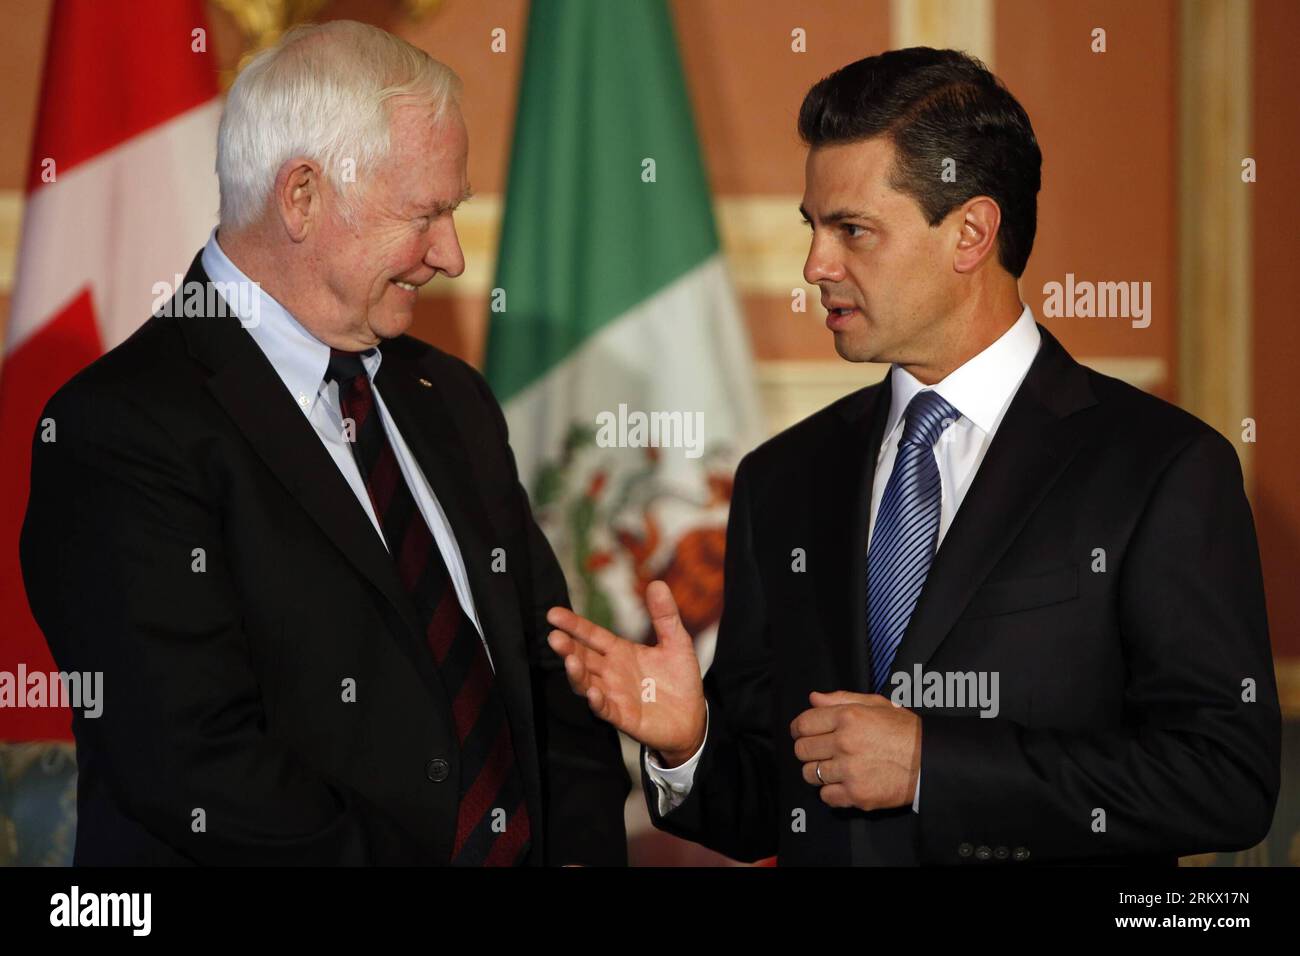 Bildnummer : 58854254 référence : 29.11.2012 Copyright : imago/Xinhua (121129) -- OTTAWA, le 29 novembre 2012 (Xinhua) -- le président élu du Mexique, Enrique Pena Nieto (à droite), rencontre le gouverneur général du Canada, David Johnston, à Rideau Hall, le 28 novembre 2012, à Ottawa, Canada. (Xinhua/David Kawai) CANADA-MEXIQUE-ENRIQUE PENA NIETO-VISIT PUBLICATIONxNOTxINxCHN personnes Politik xns x0x 2012 quer 58854254 Date 29 11 2012 Copyright Imago XINHUA Ottawa nov 29 2012 le président MEXICAIN élu de XINHUA Enrique Pena Nieto r rencontre le gouverneur général du Canada David Johnston À Rideau Hall LE 28 2012 novembre à Ottawa Canada Banque D'Images